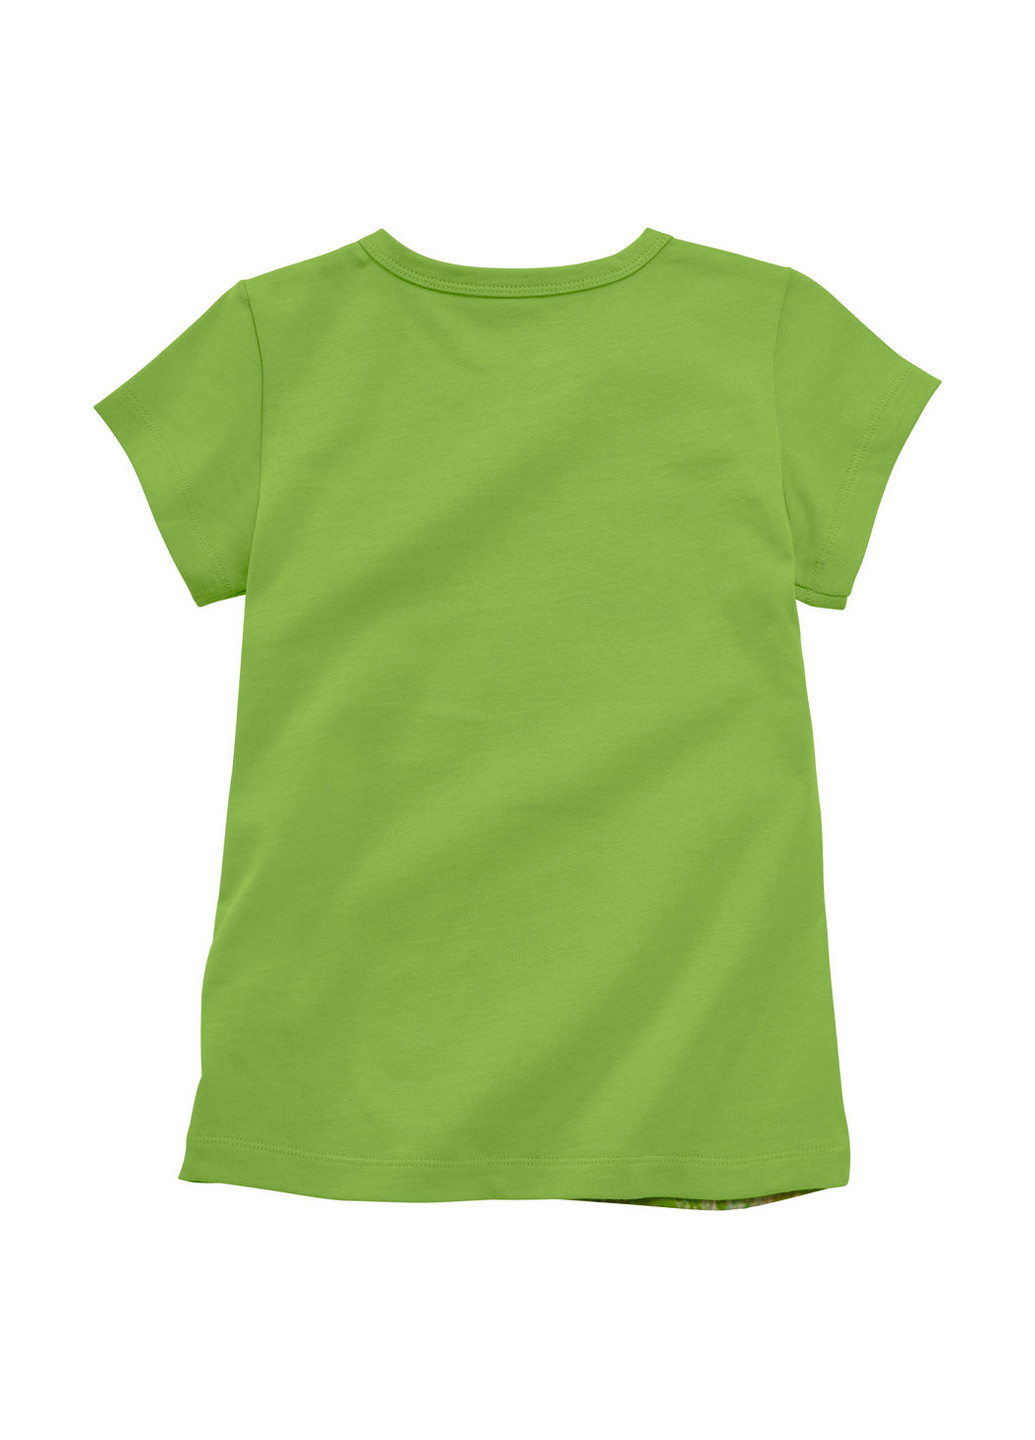 Салатовая летняя футболка Jako-O